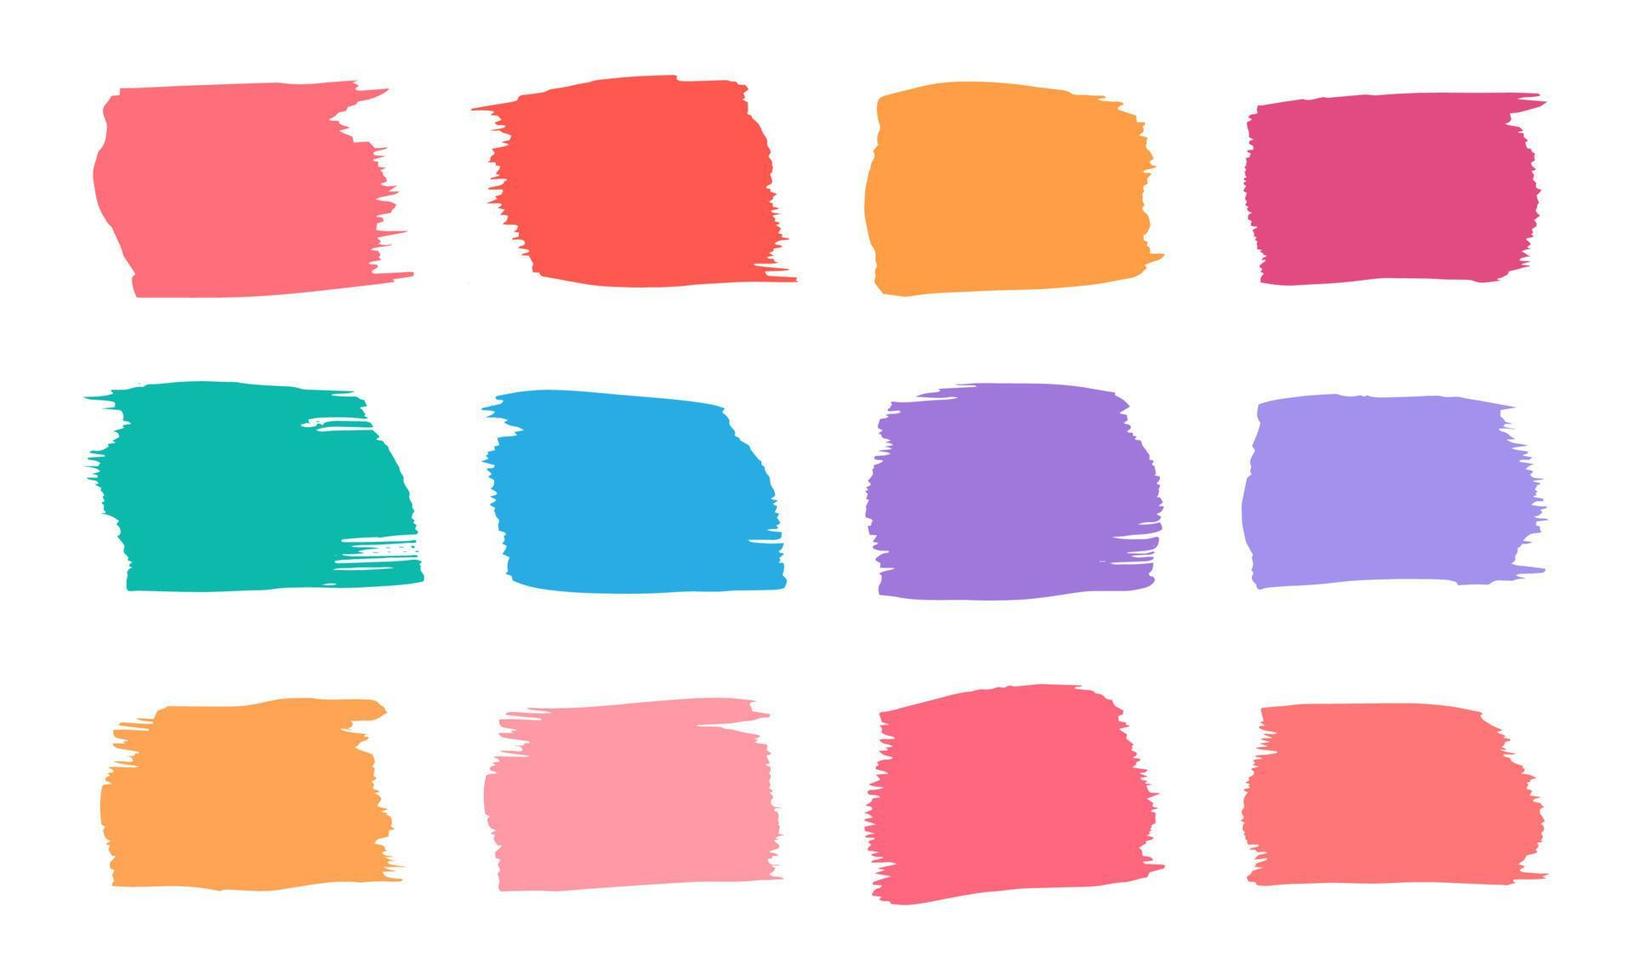 vierkant tekstkader met kleurrijke aquarel penseelstreken. geïsoleerd op een witte achtergrond. vector